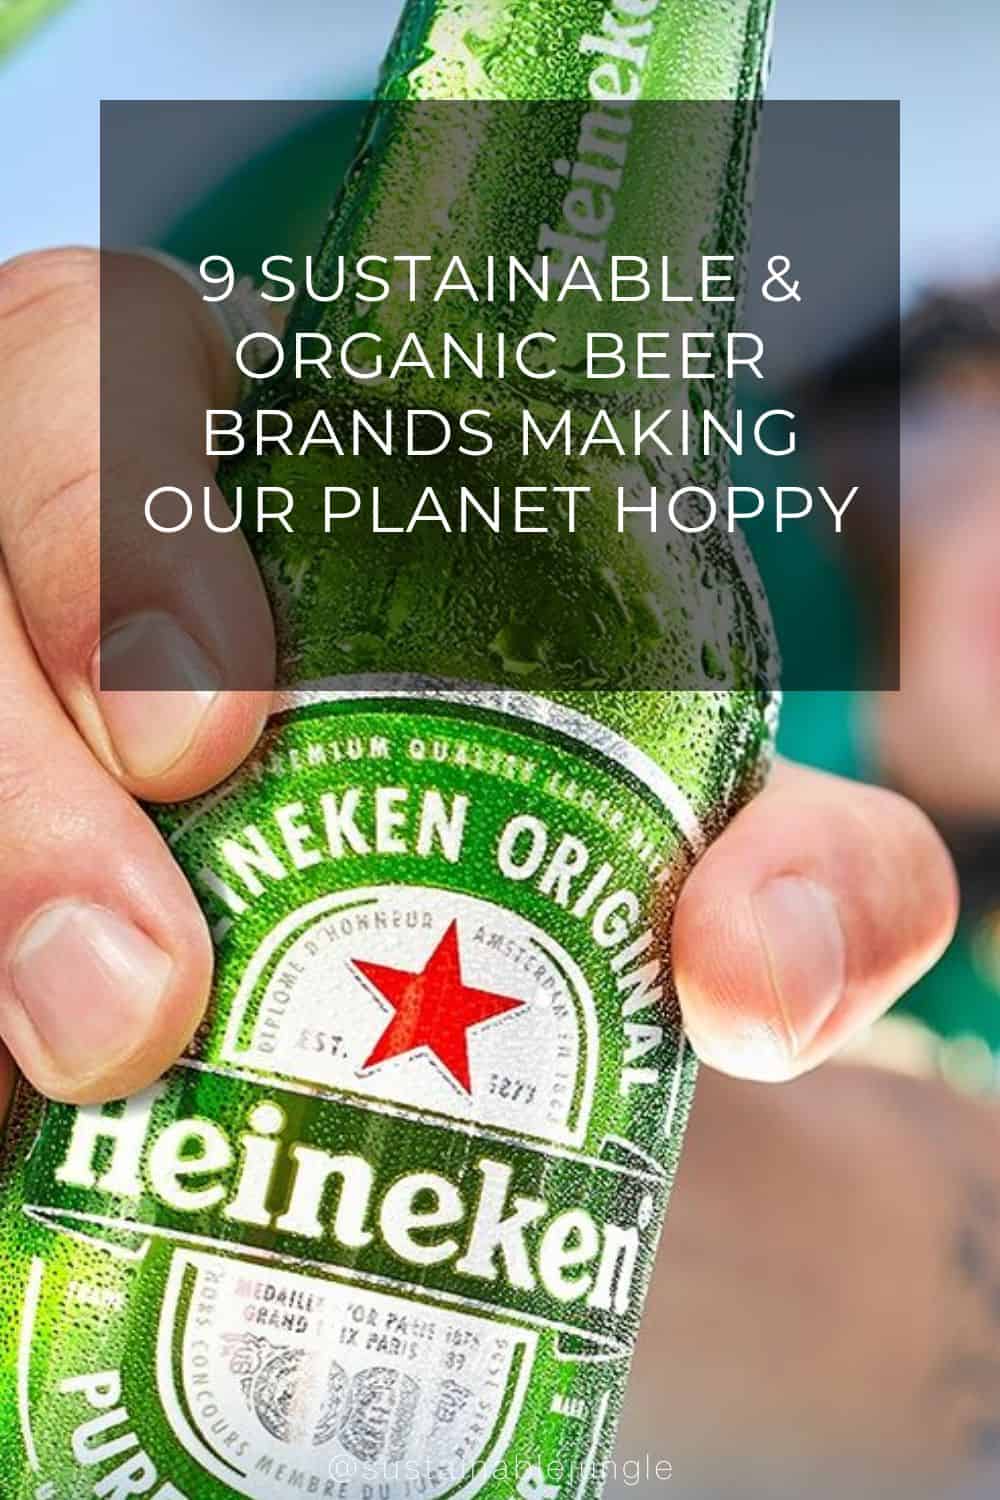 9 Sustainable & Organic Beer Brands Making Our Planet Hoppy Image by Heineken #organicbeer #sustainablebeer #organicbeerbrands #bestorganicbeer #sustainablebeercompanies #sustainablebeenpractices #sustainablejungle